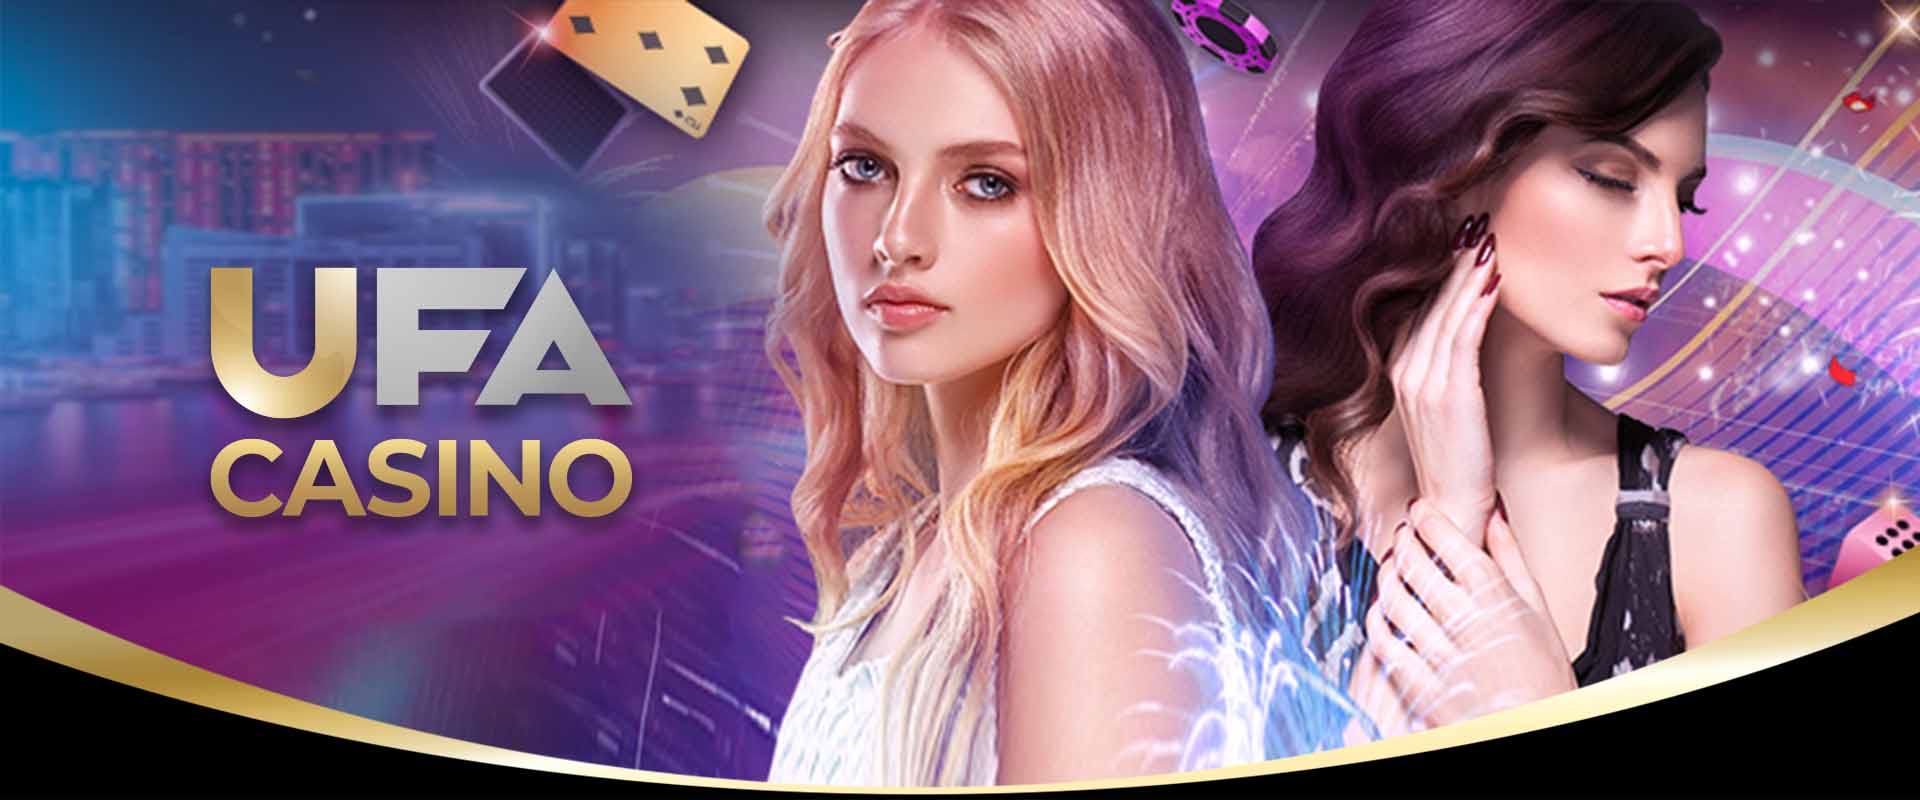 UFA Casino เกมคาสิโนและคาสิโนไลฟ์สดพร้อม VJ สาวสุดน่ารัก ที่ตบเท้ามาให้เลือกกันอย่างจุใจ